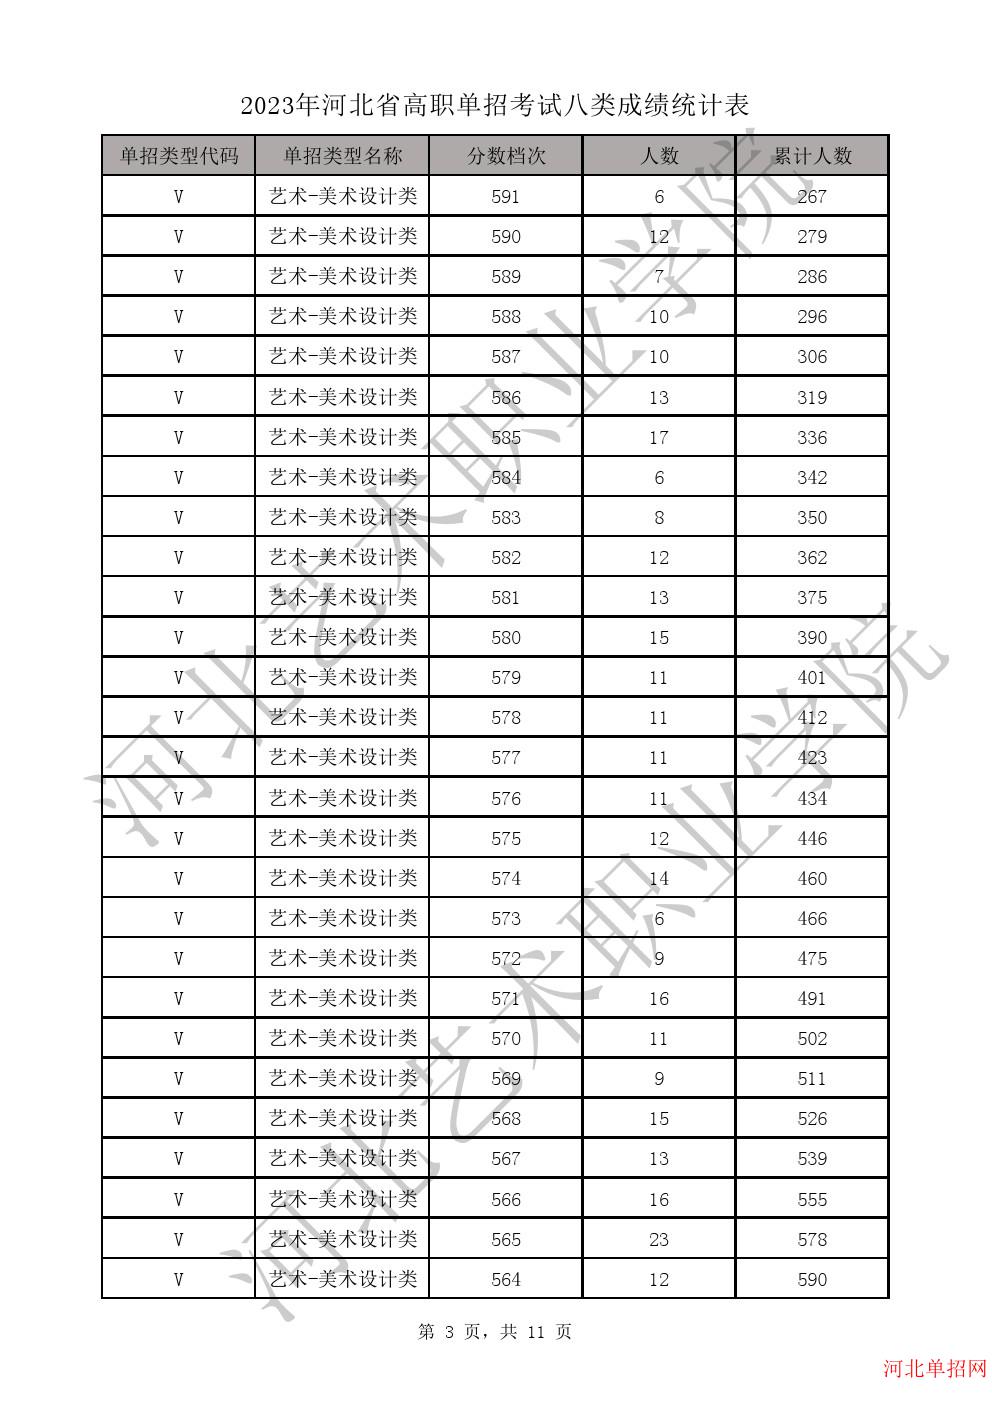 2023年河北省高职单招考试八类成绩统计表-V艺术-美术设计类一分一档表 图3